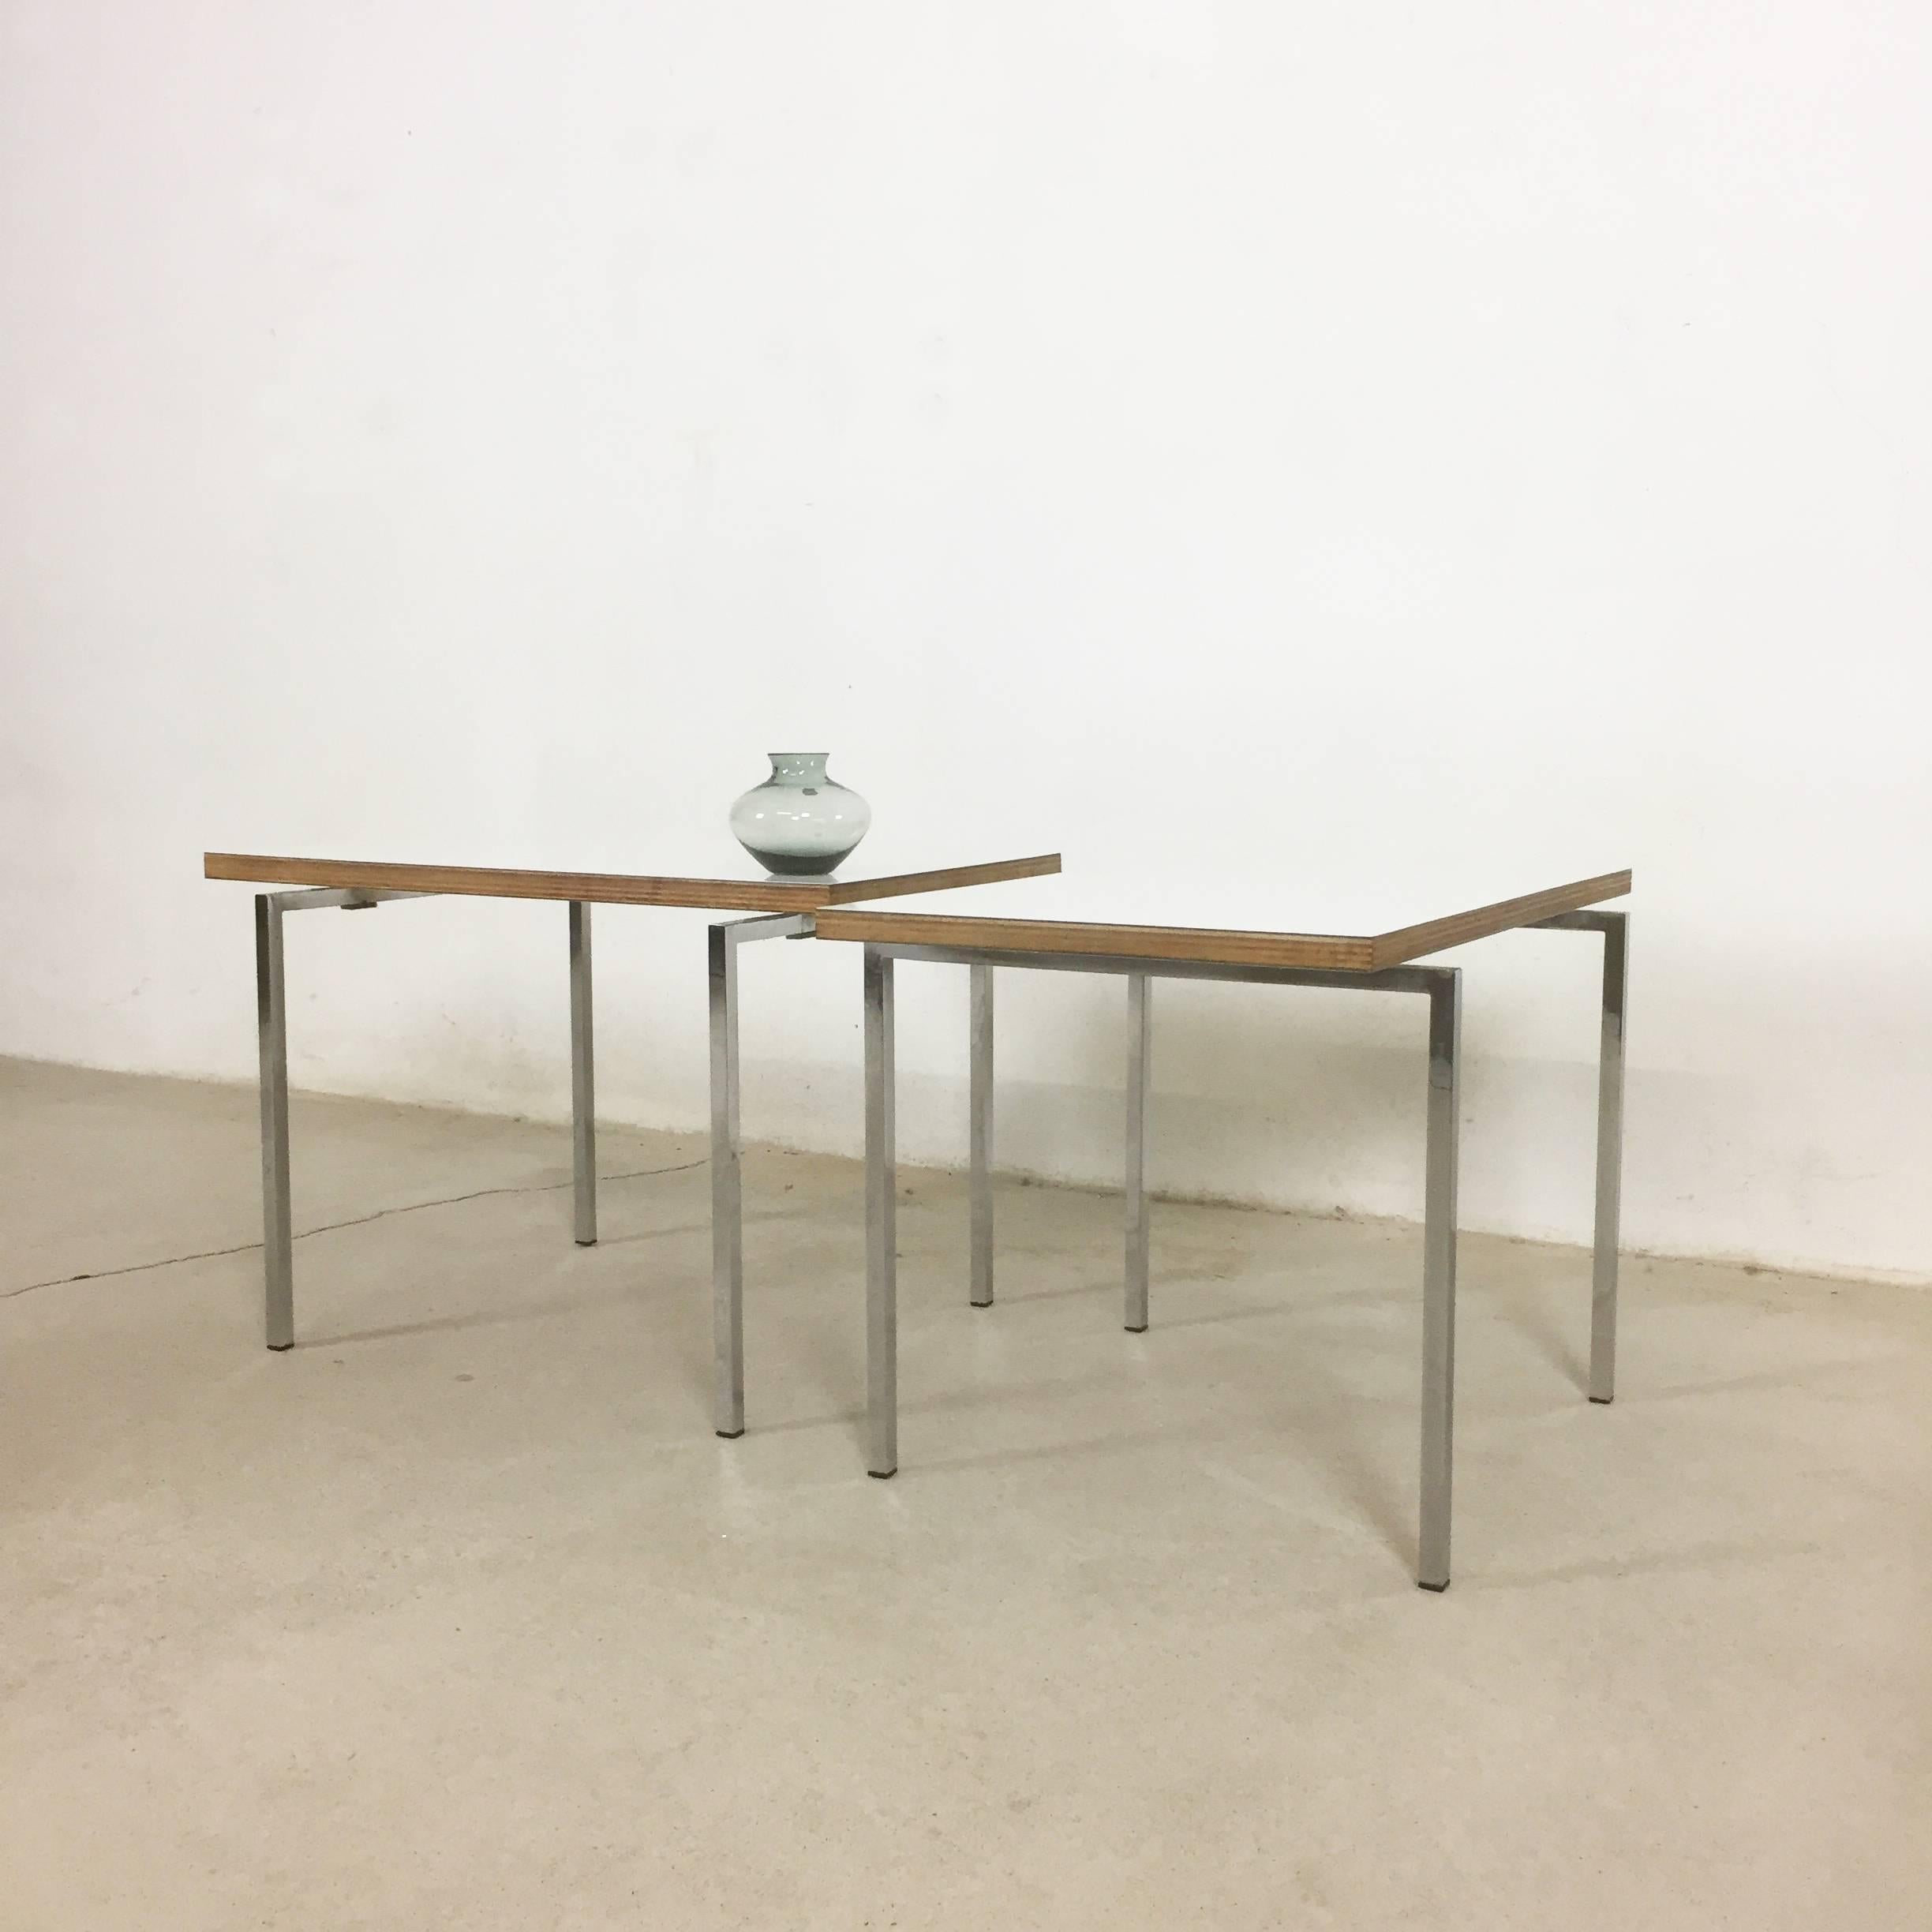 Swiss Set of Two Modernist Stacking Tables, Trix & Robert Haussmann, Switzerland, 1957